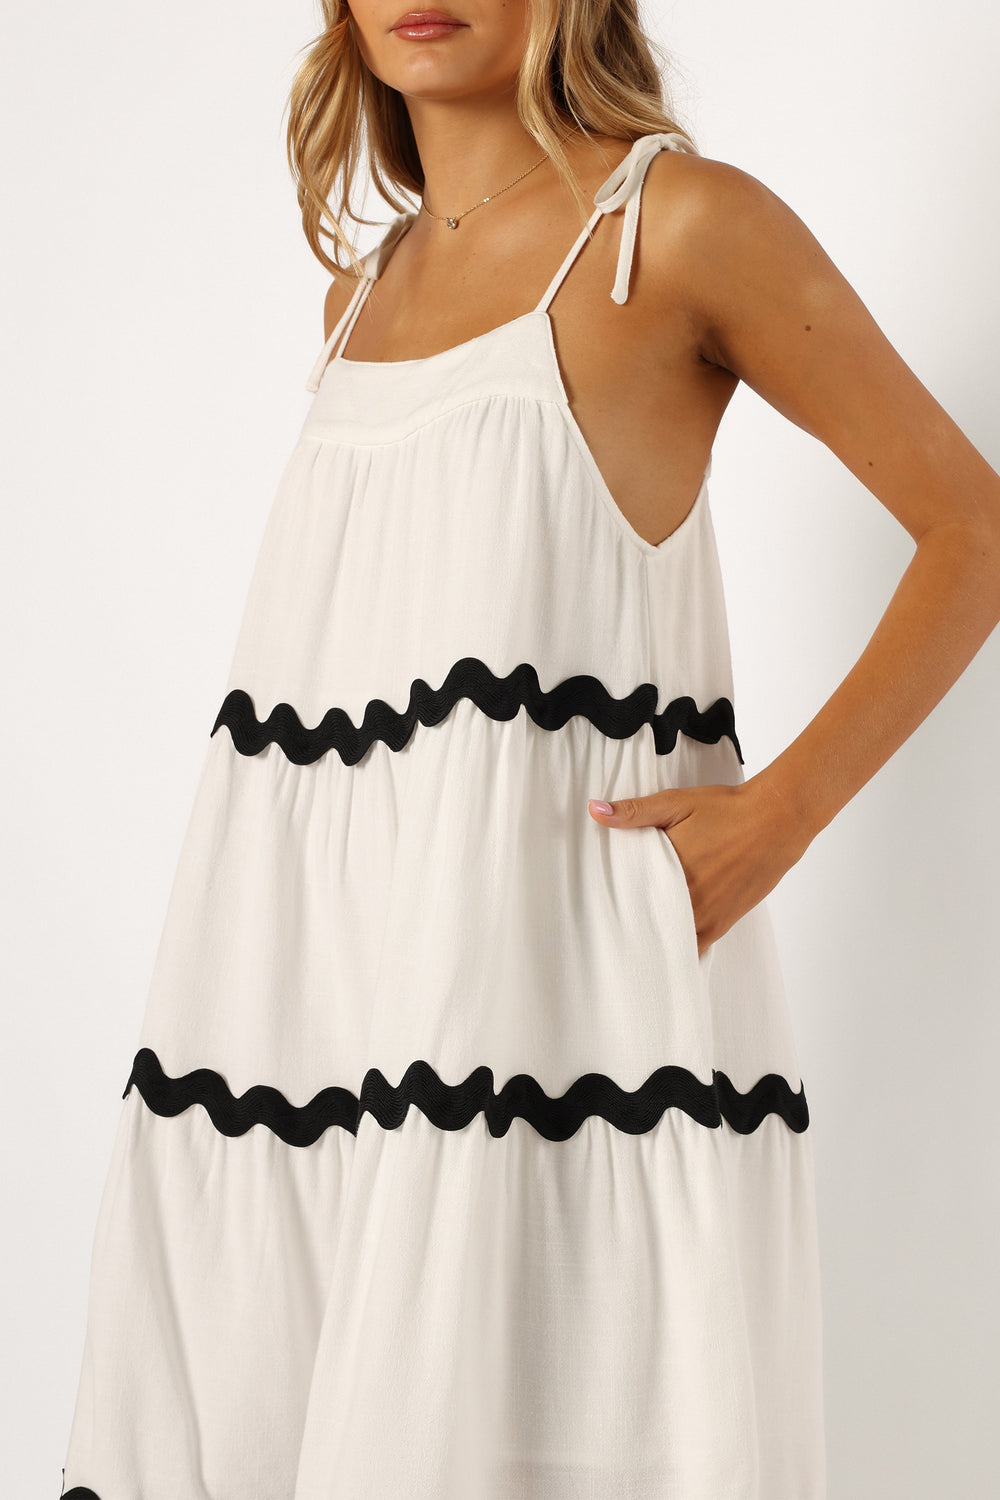 Petal and Pup USA DRESSES Uma Mini Dress - White Black